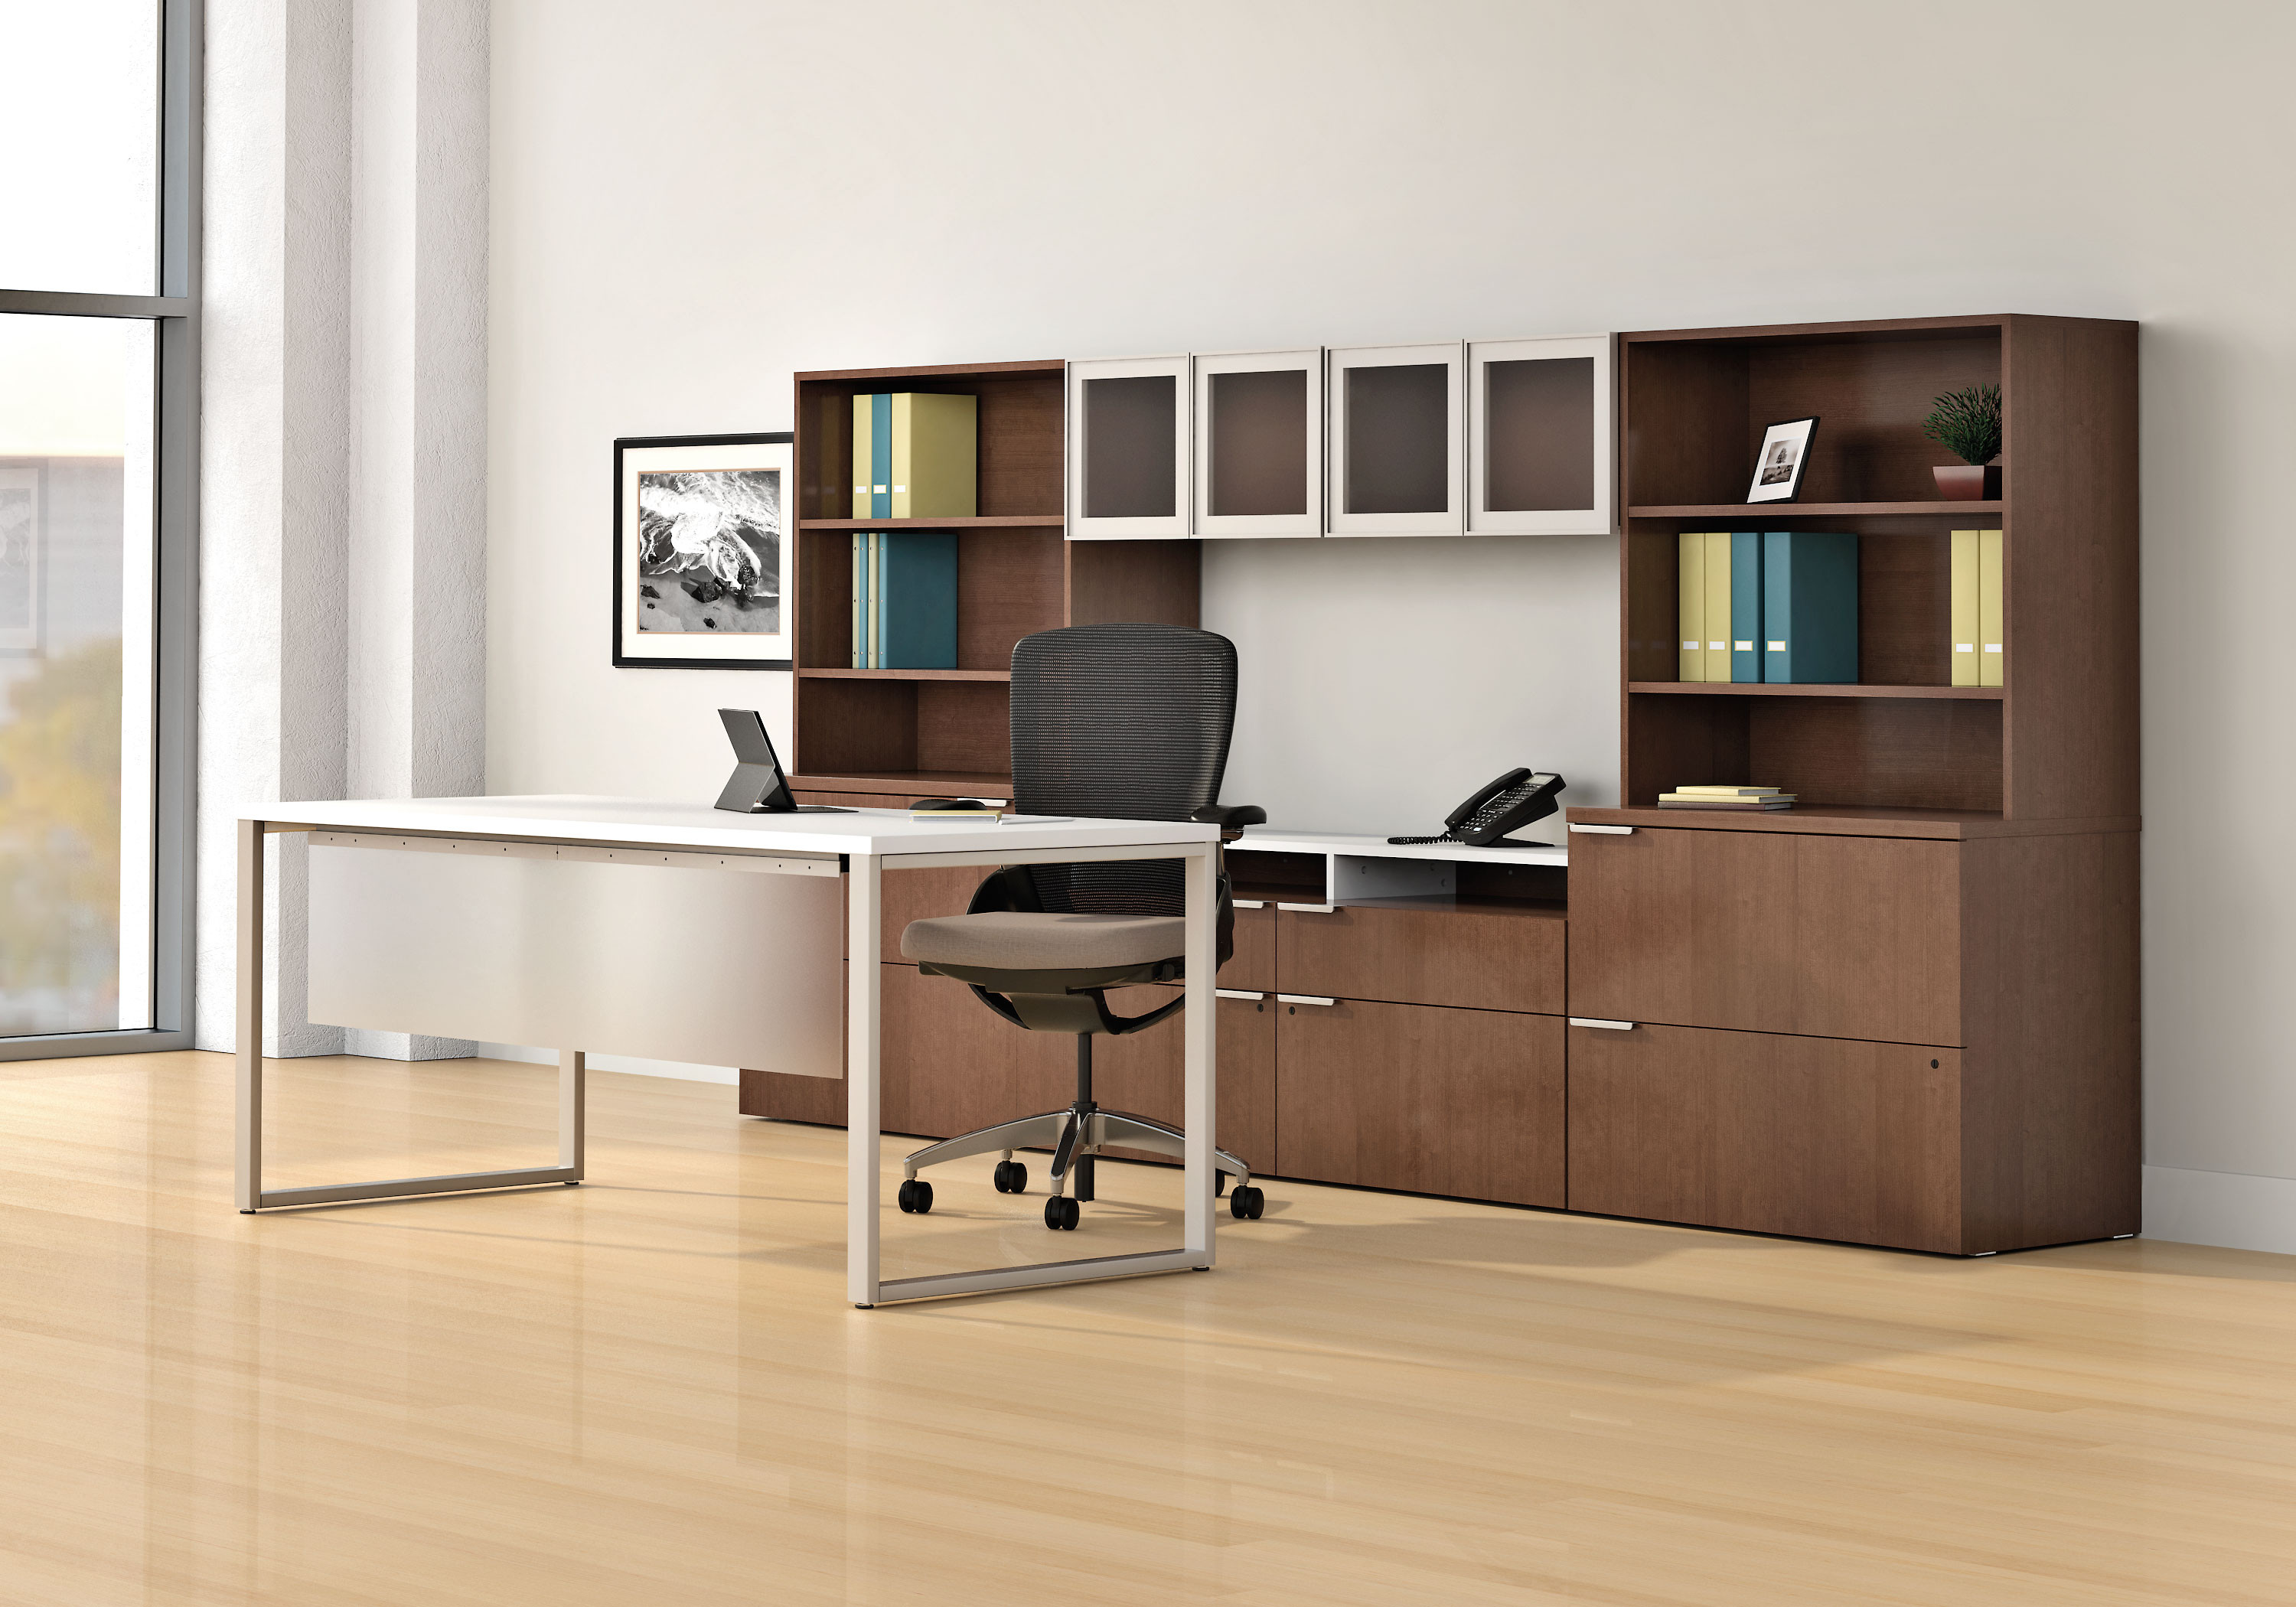 Best ideas about Office Desk Furniture
. Save or Pin puter Desks fice Desks Cincinnati Now.